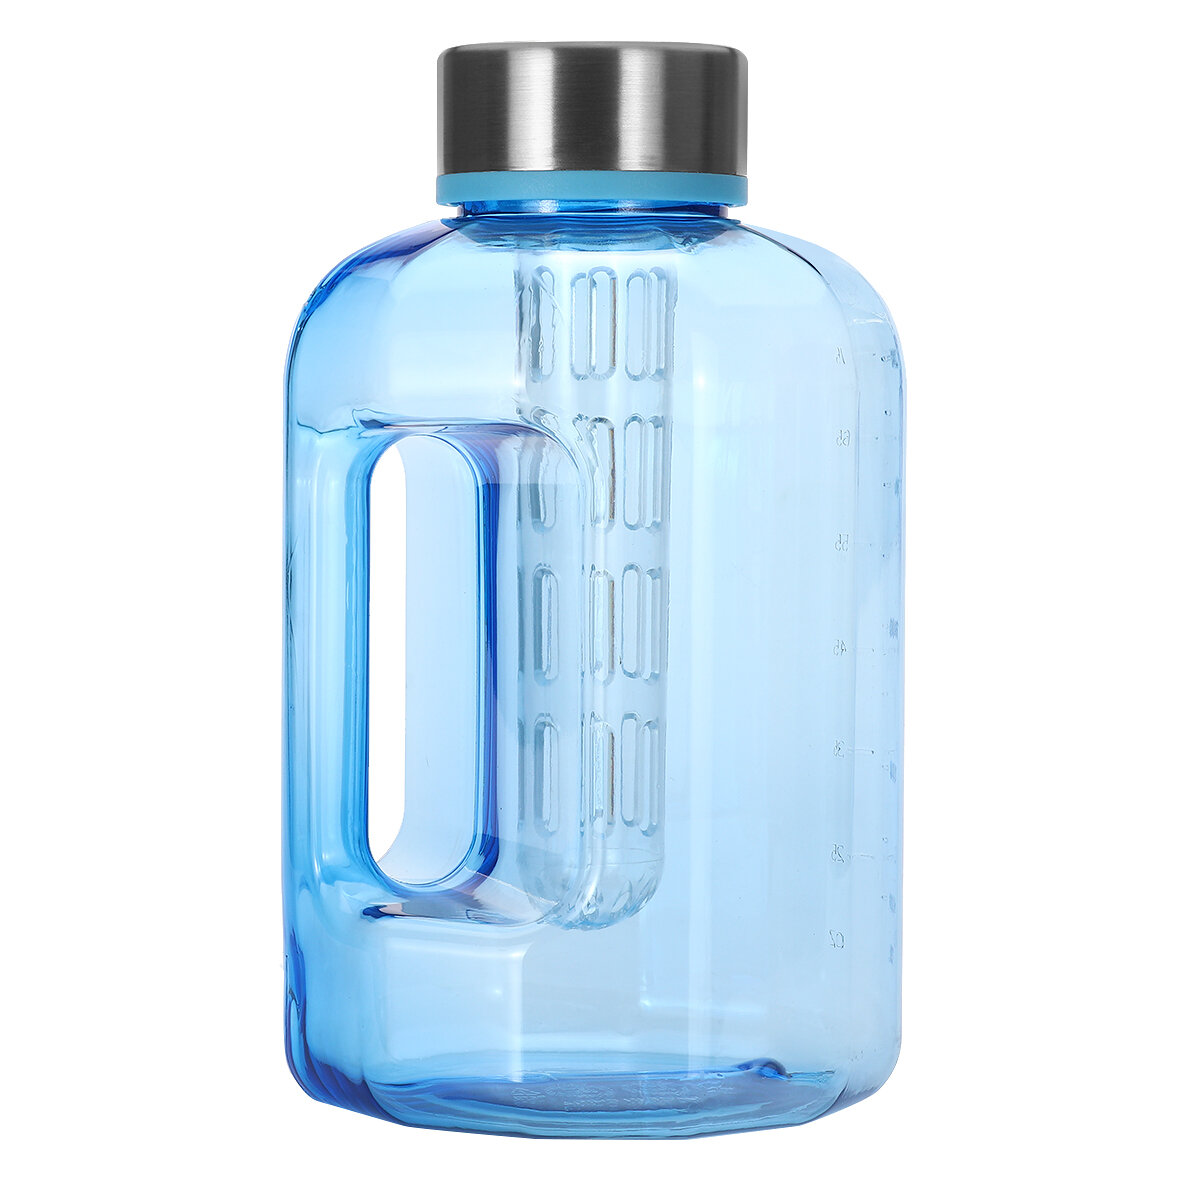 Nagy kapacitású, BPA-mentes sportvízivó palack 2,2L / 84 oz edzőteremben, túrázáshoz és kerékpározáshoz használható kupakkal.